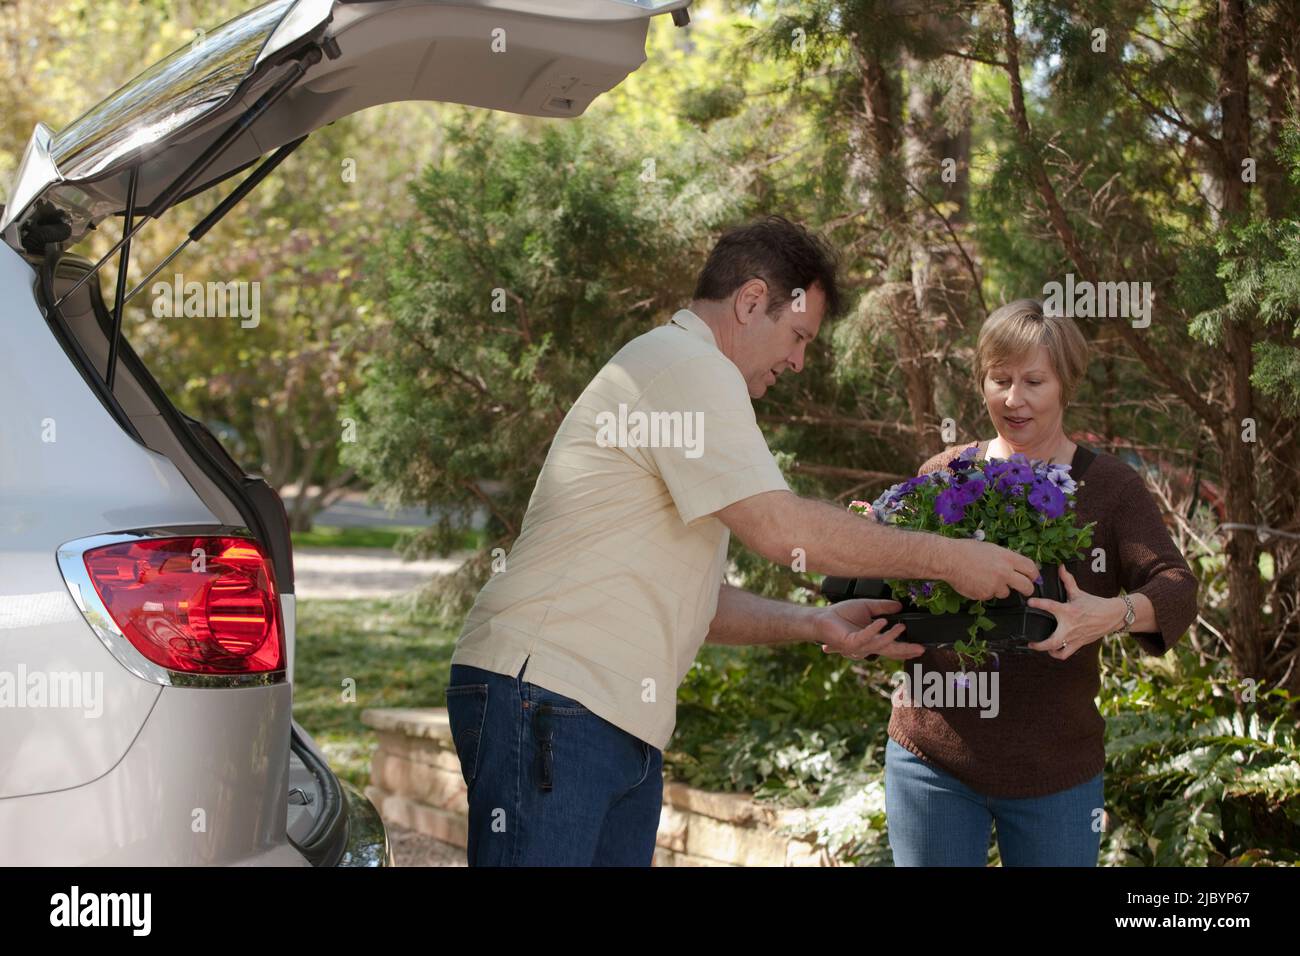 Mari aidant la femme avec un plateau de fleurs Banque D'Images